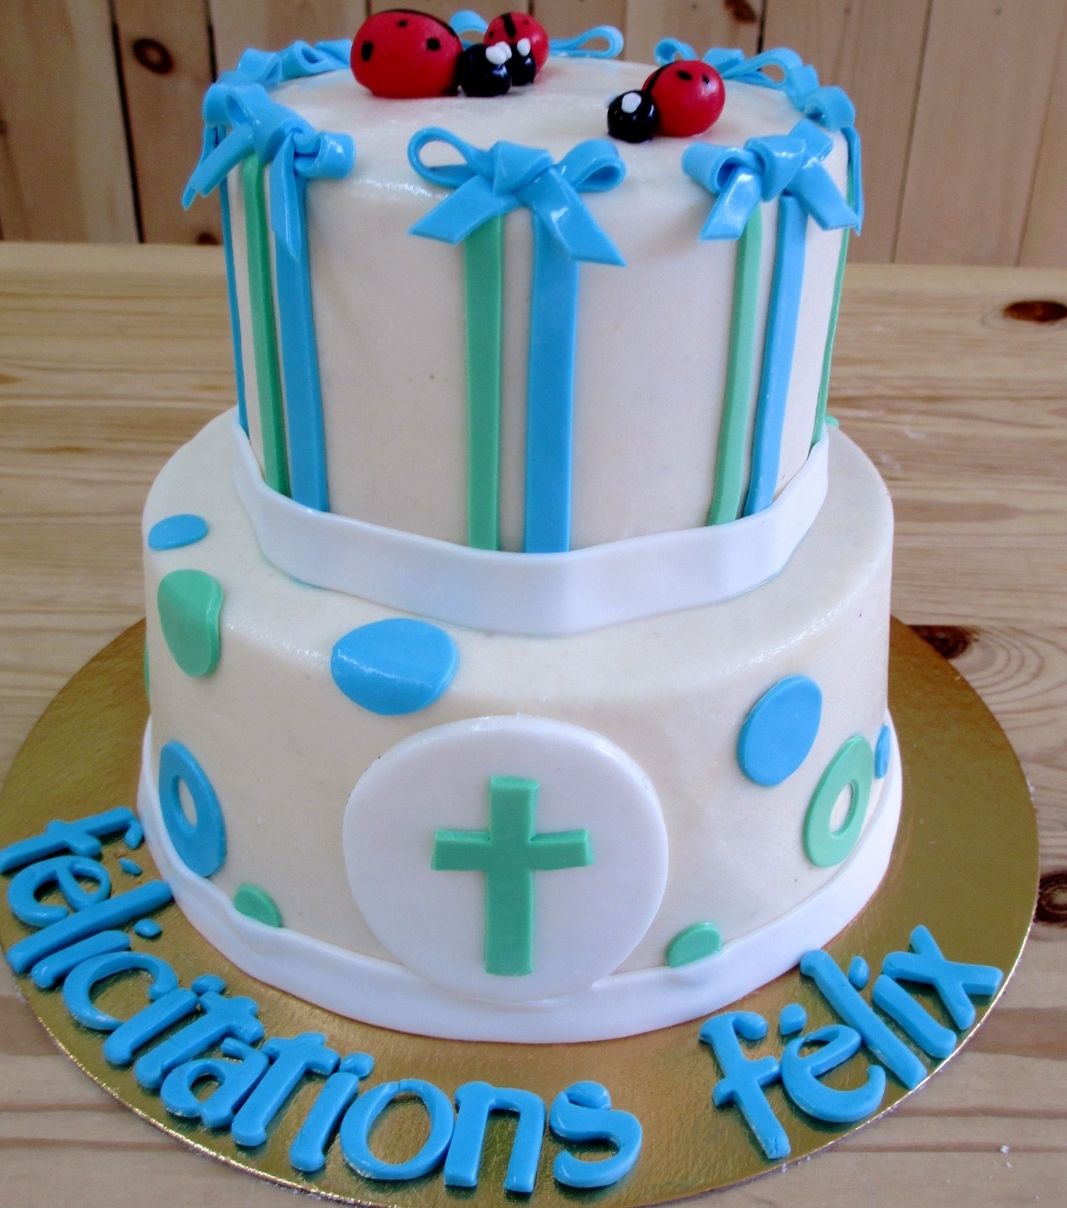 Gâteau de baptême de Félix: gâteau de 2 étages à thématique de coccinelle avec une couverture en pâte d'amande naturelle bleue et verte et décoré d'une croix verte.